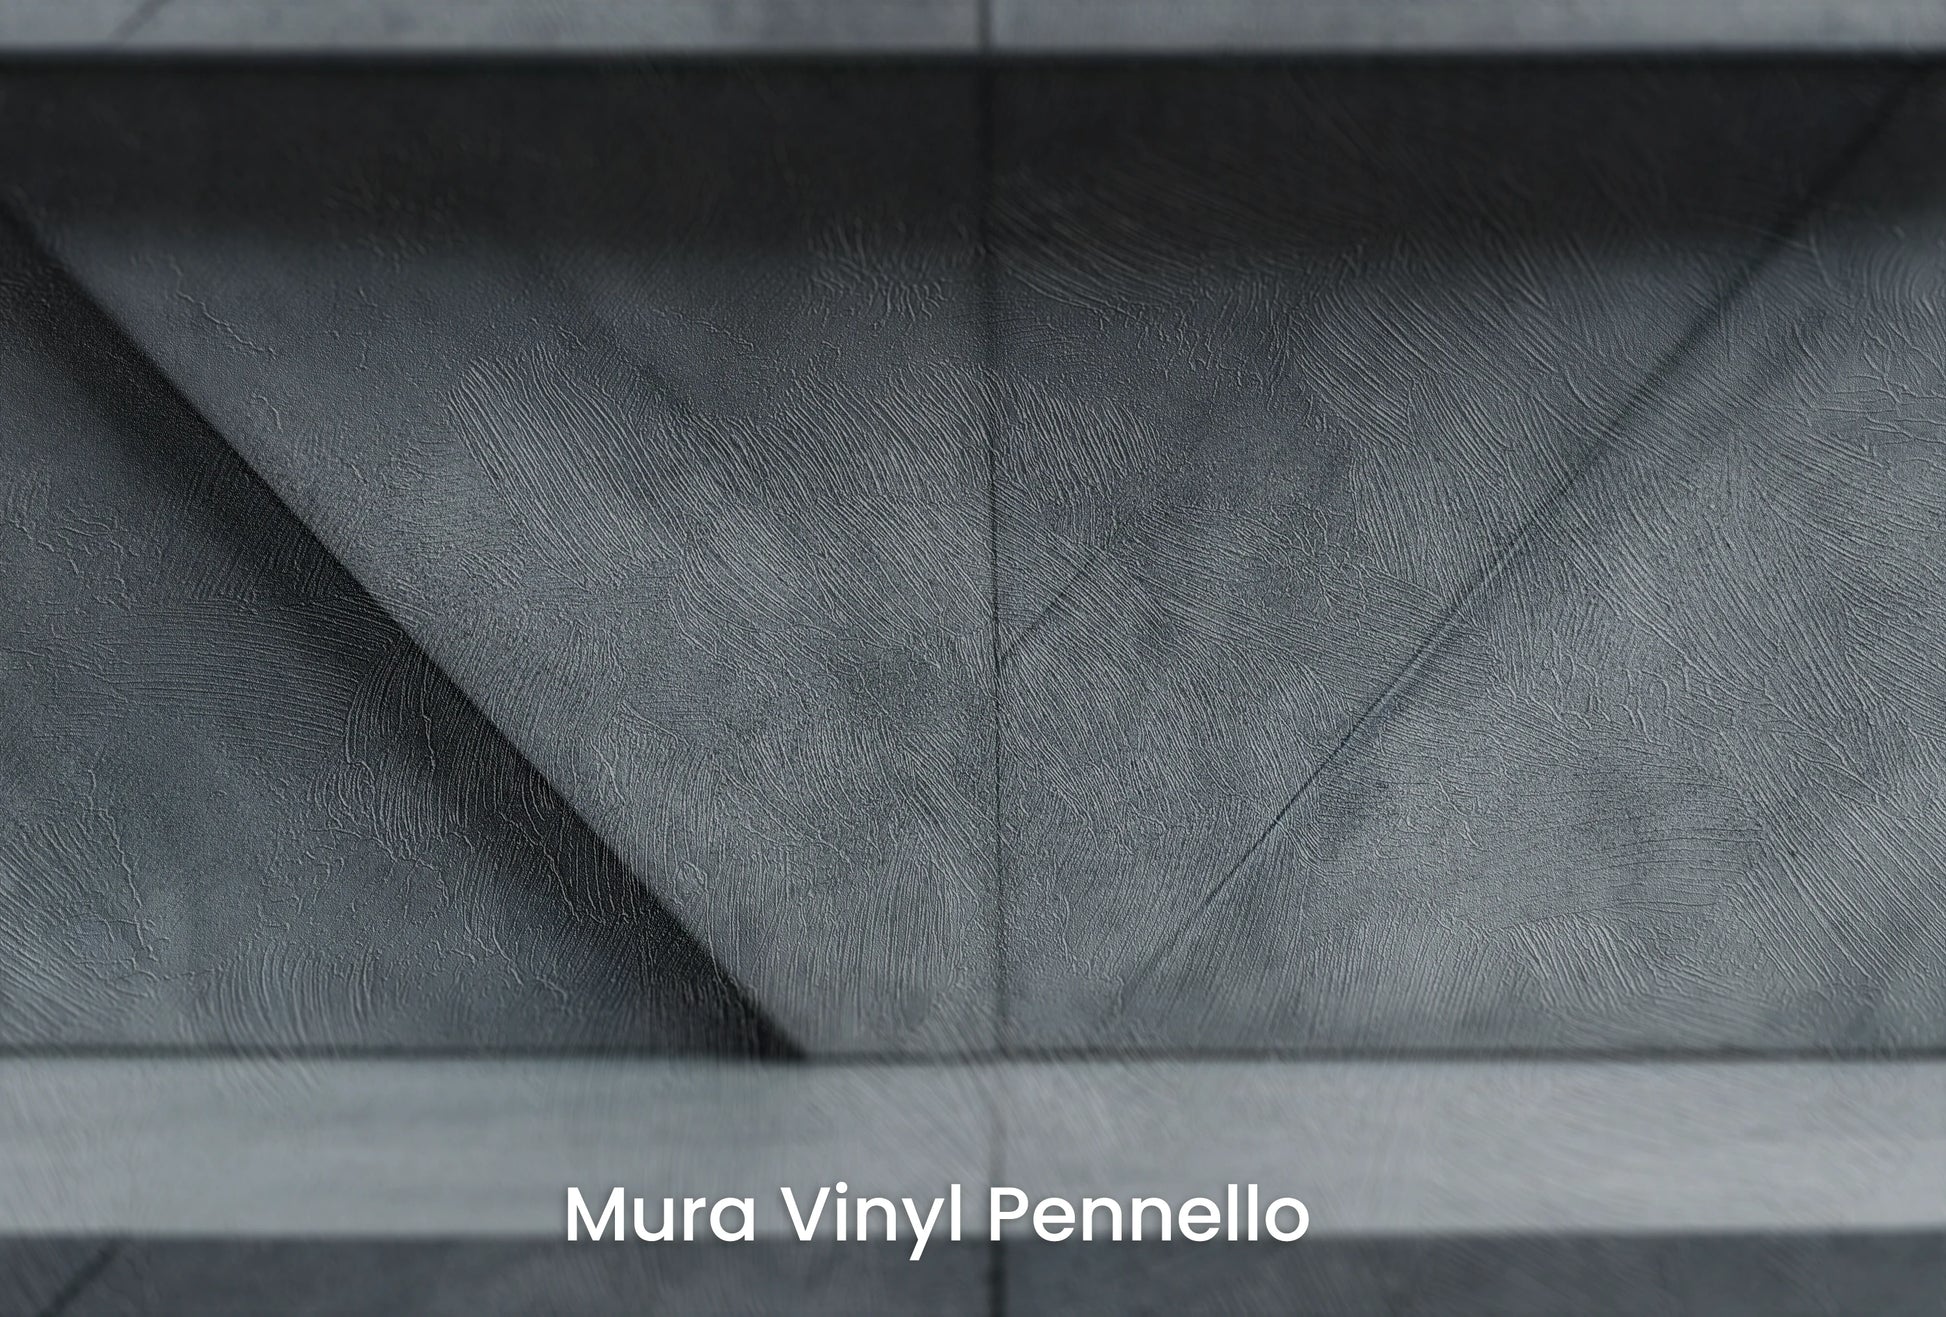 Zbliżenie na artystyczną fototapetę o nazwie Urban Angles na podłożu Mura Vinyl Pennello - faktura pociągnięć pędzla malarskiego.